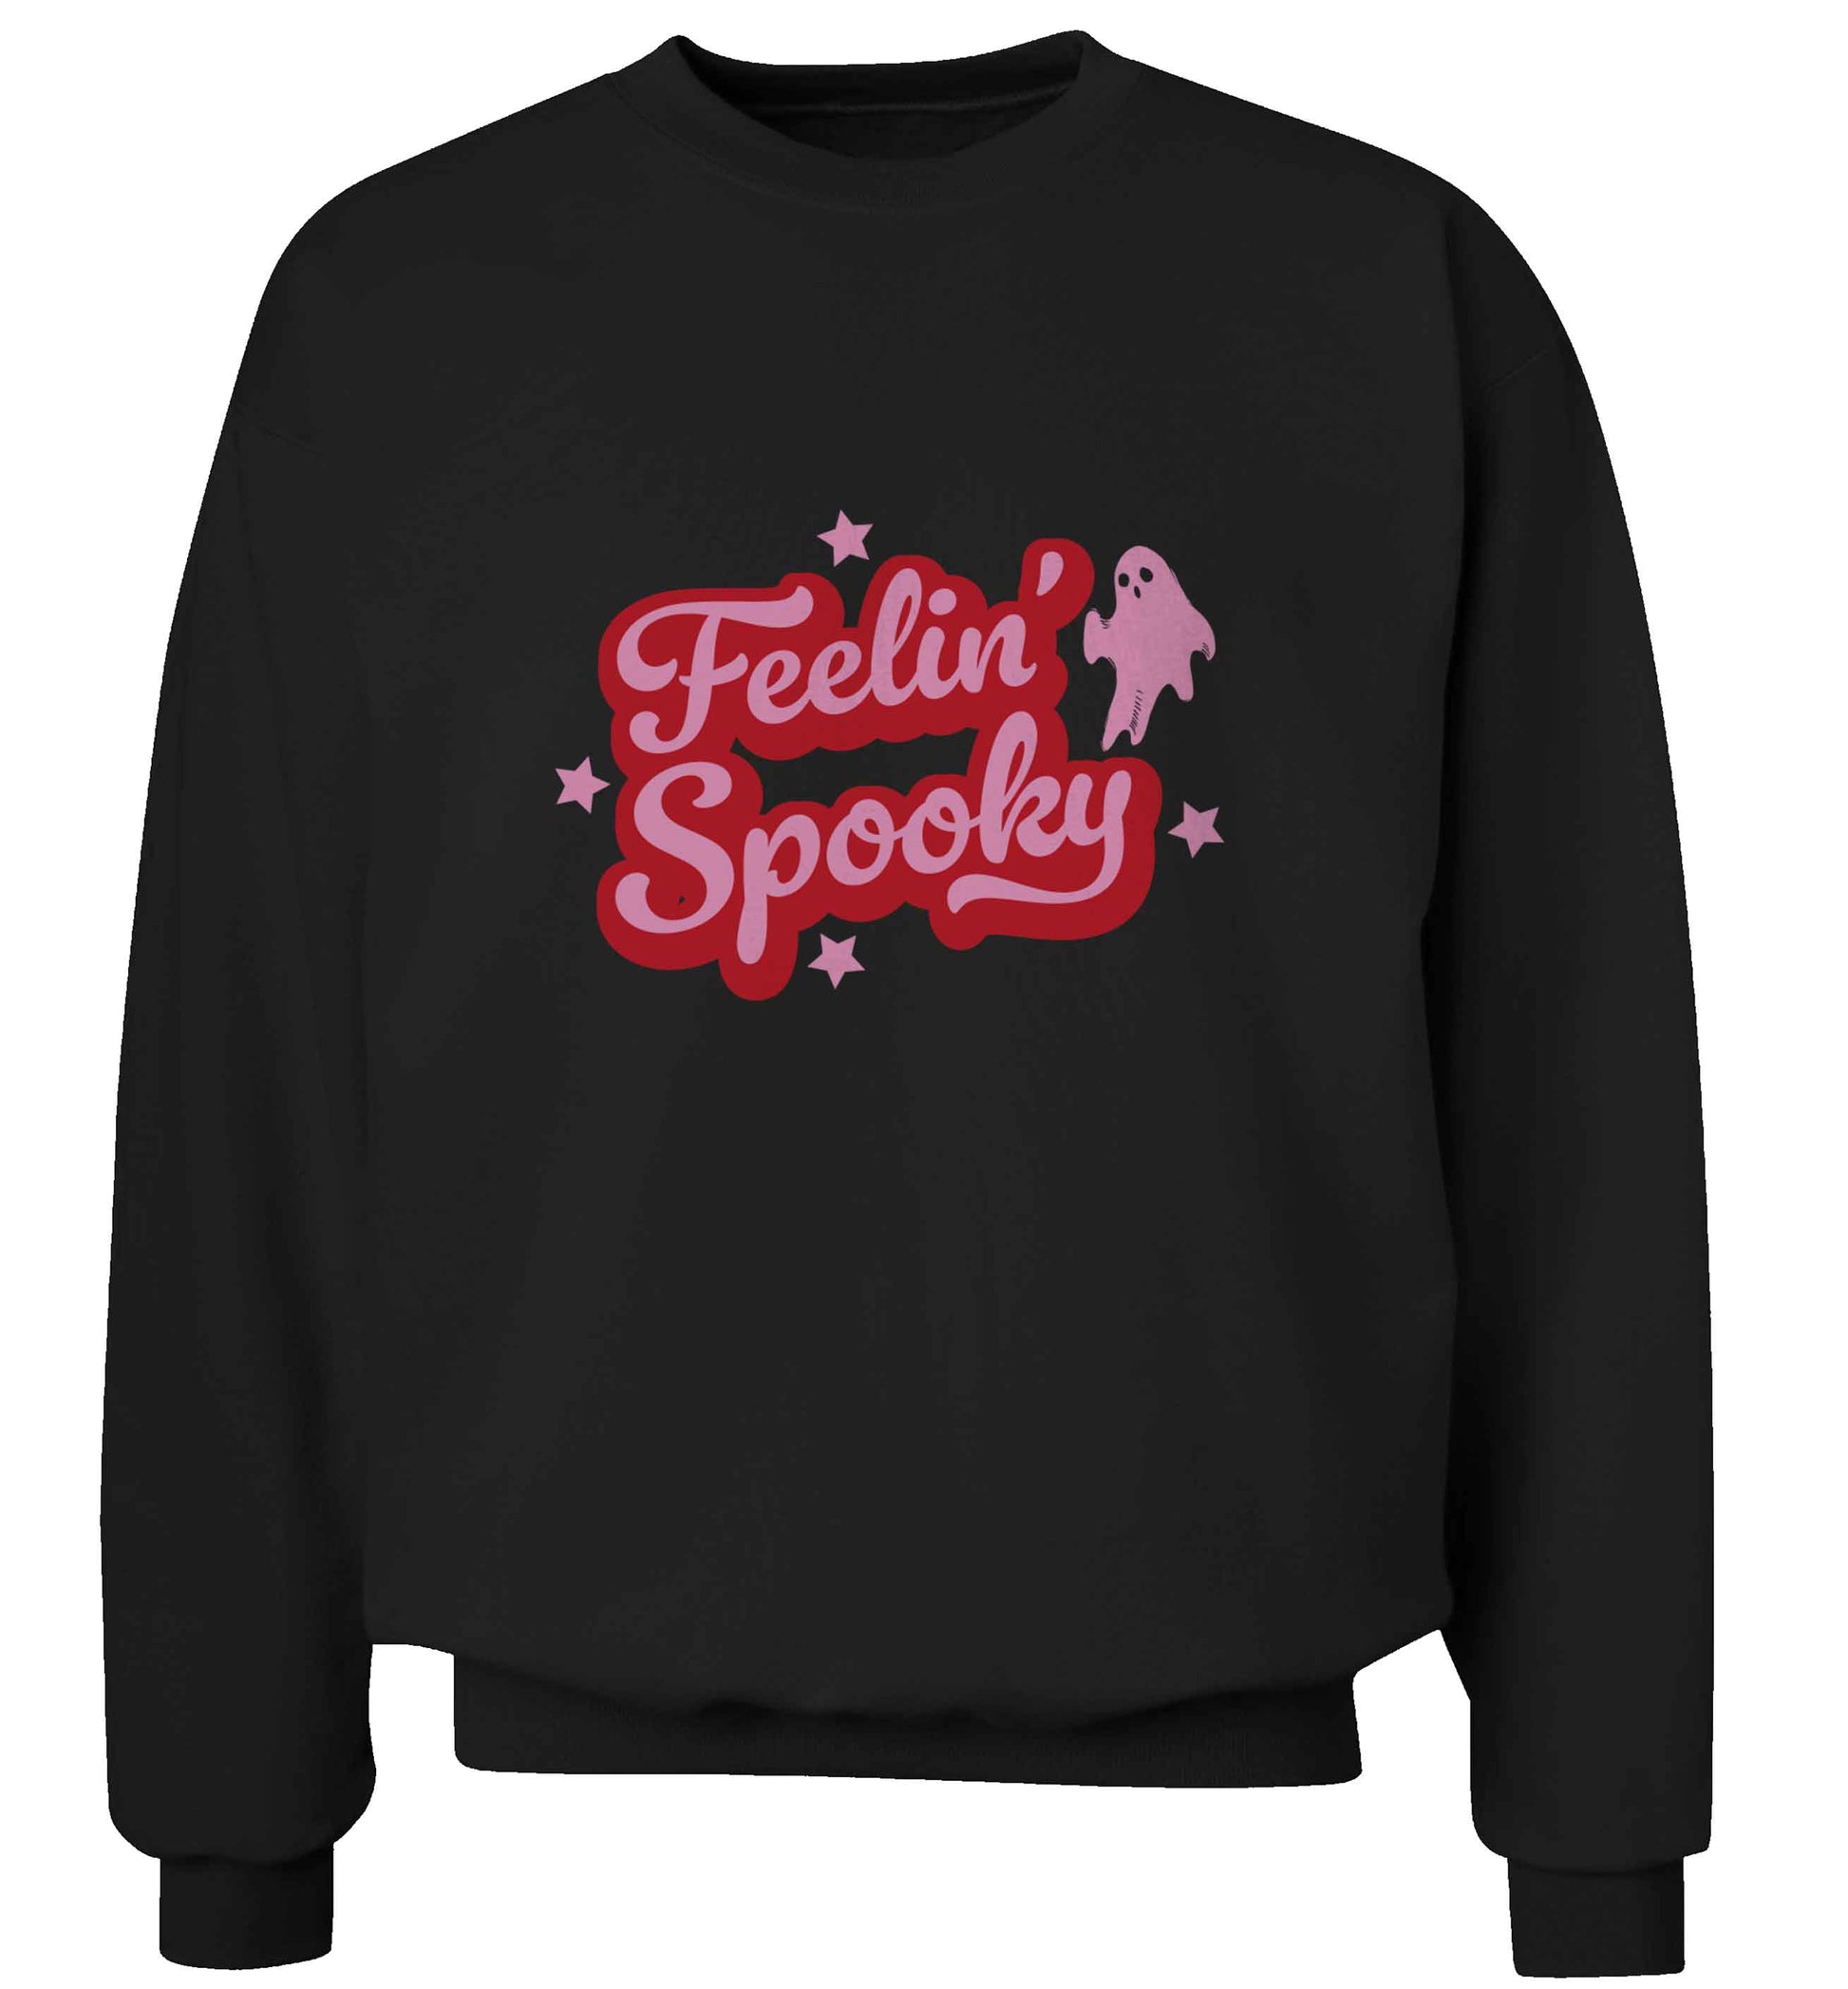 Feelin' Spooky Kit adult's unisex black sweater 2XL